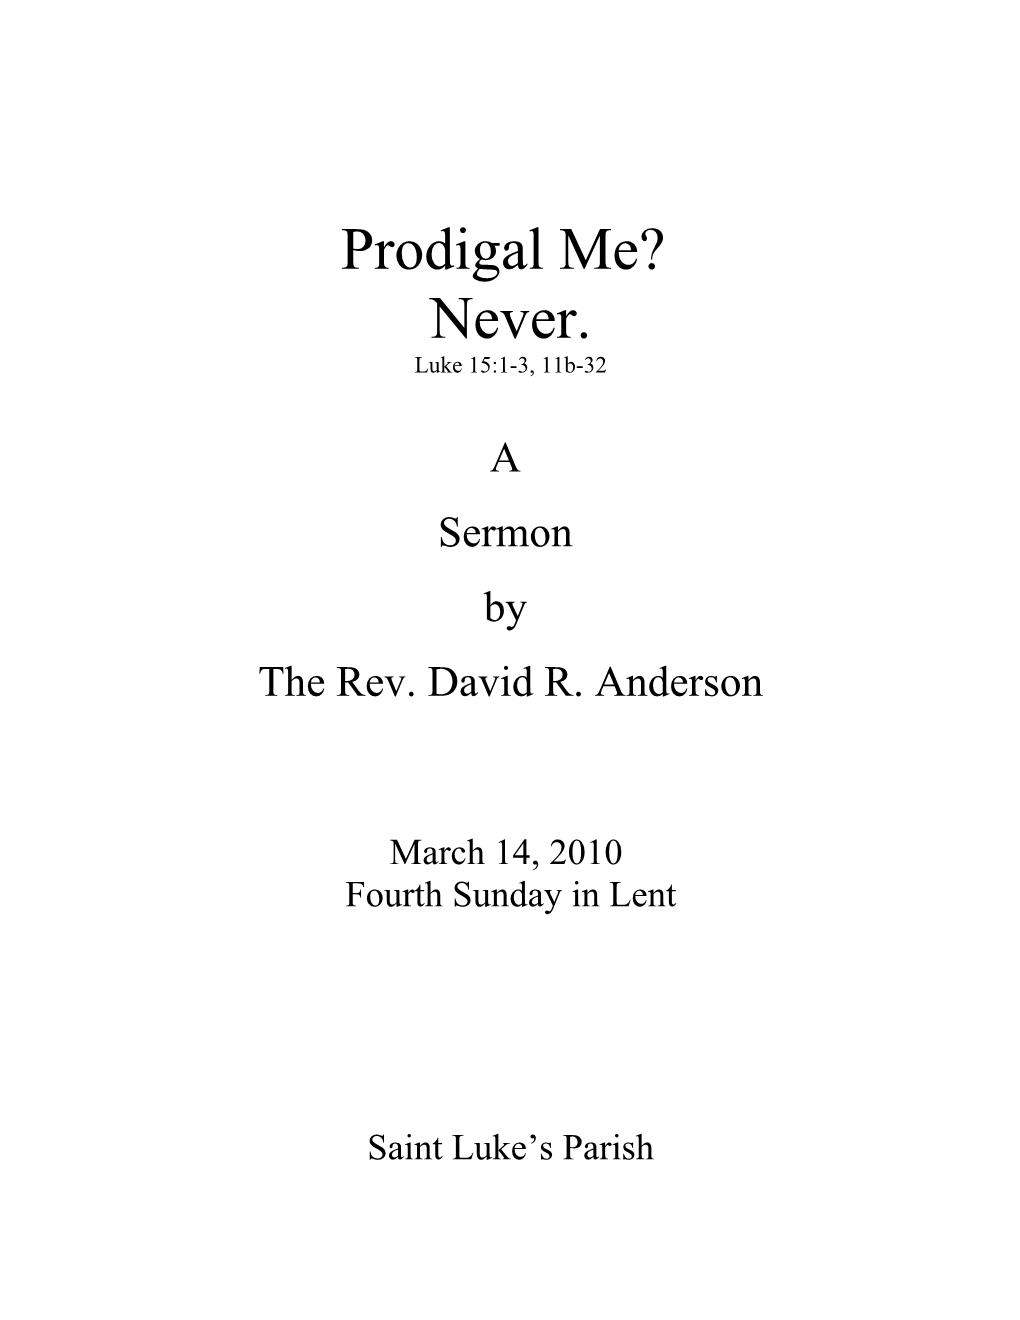 The Rev. David R. Anderson